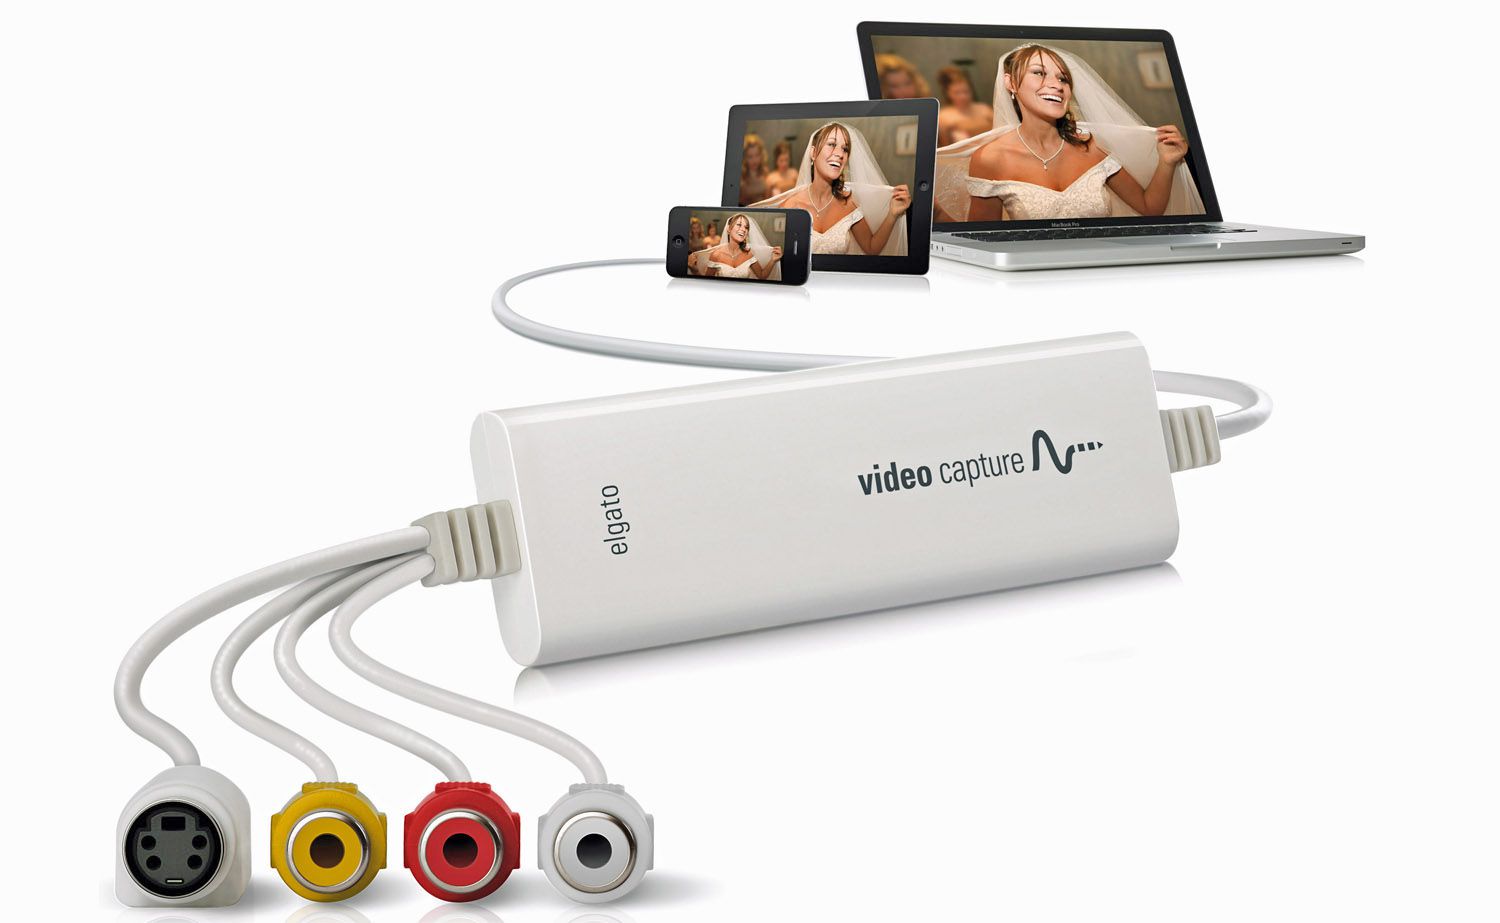 Analogové zařízení k zachycení videa USB od společnosti Elgato